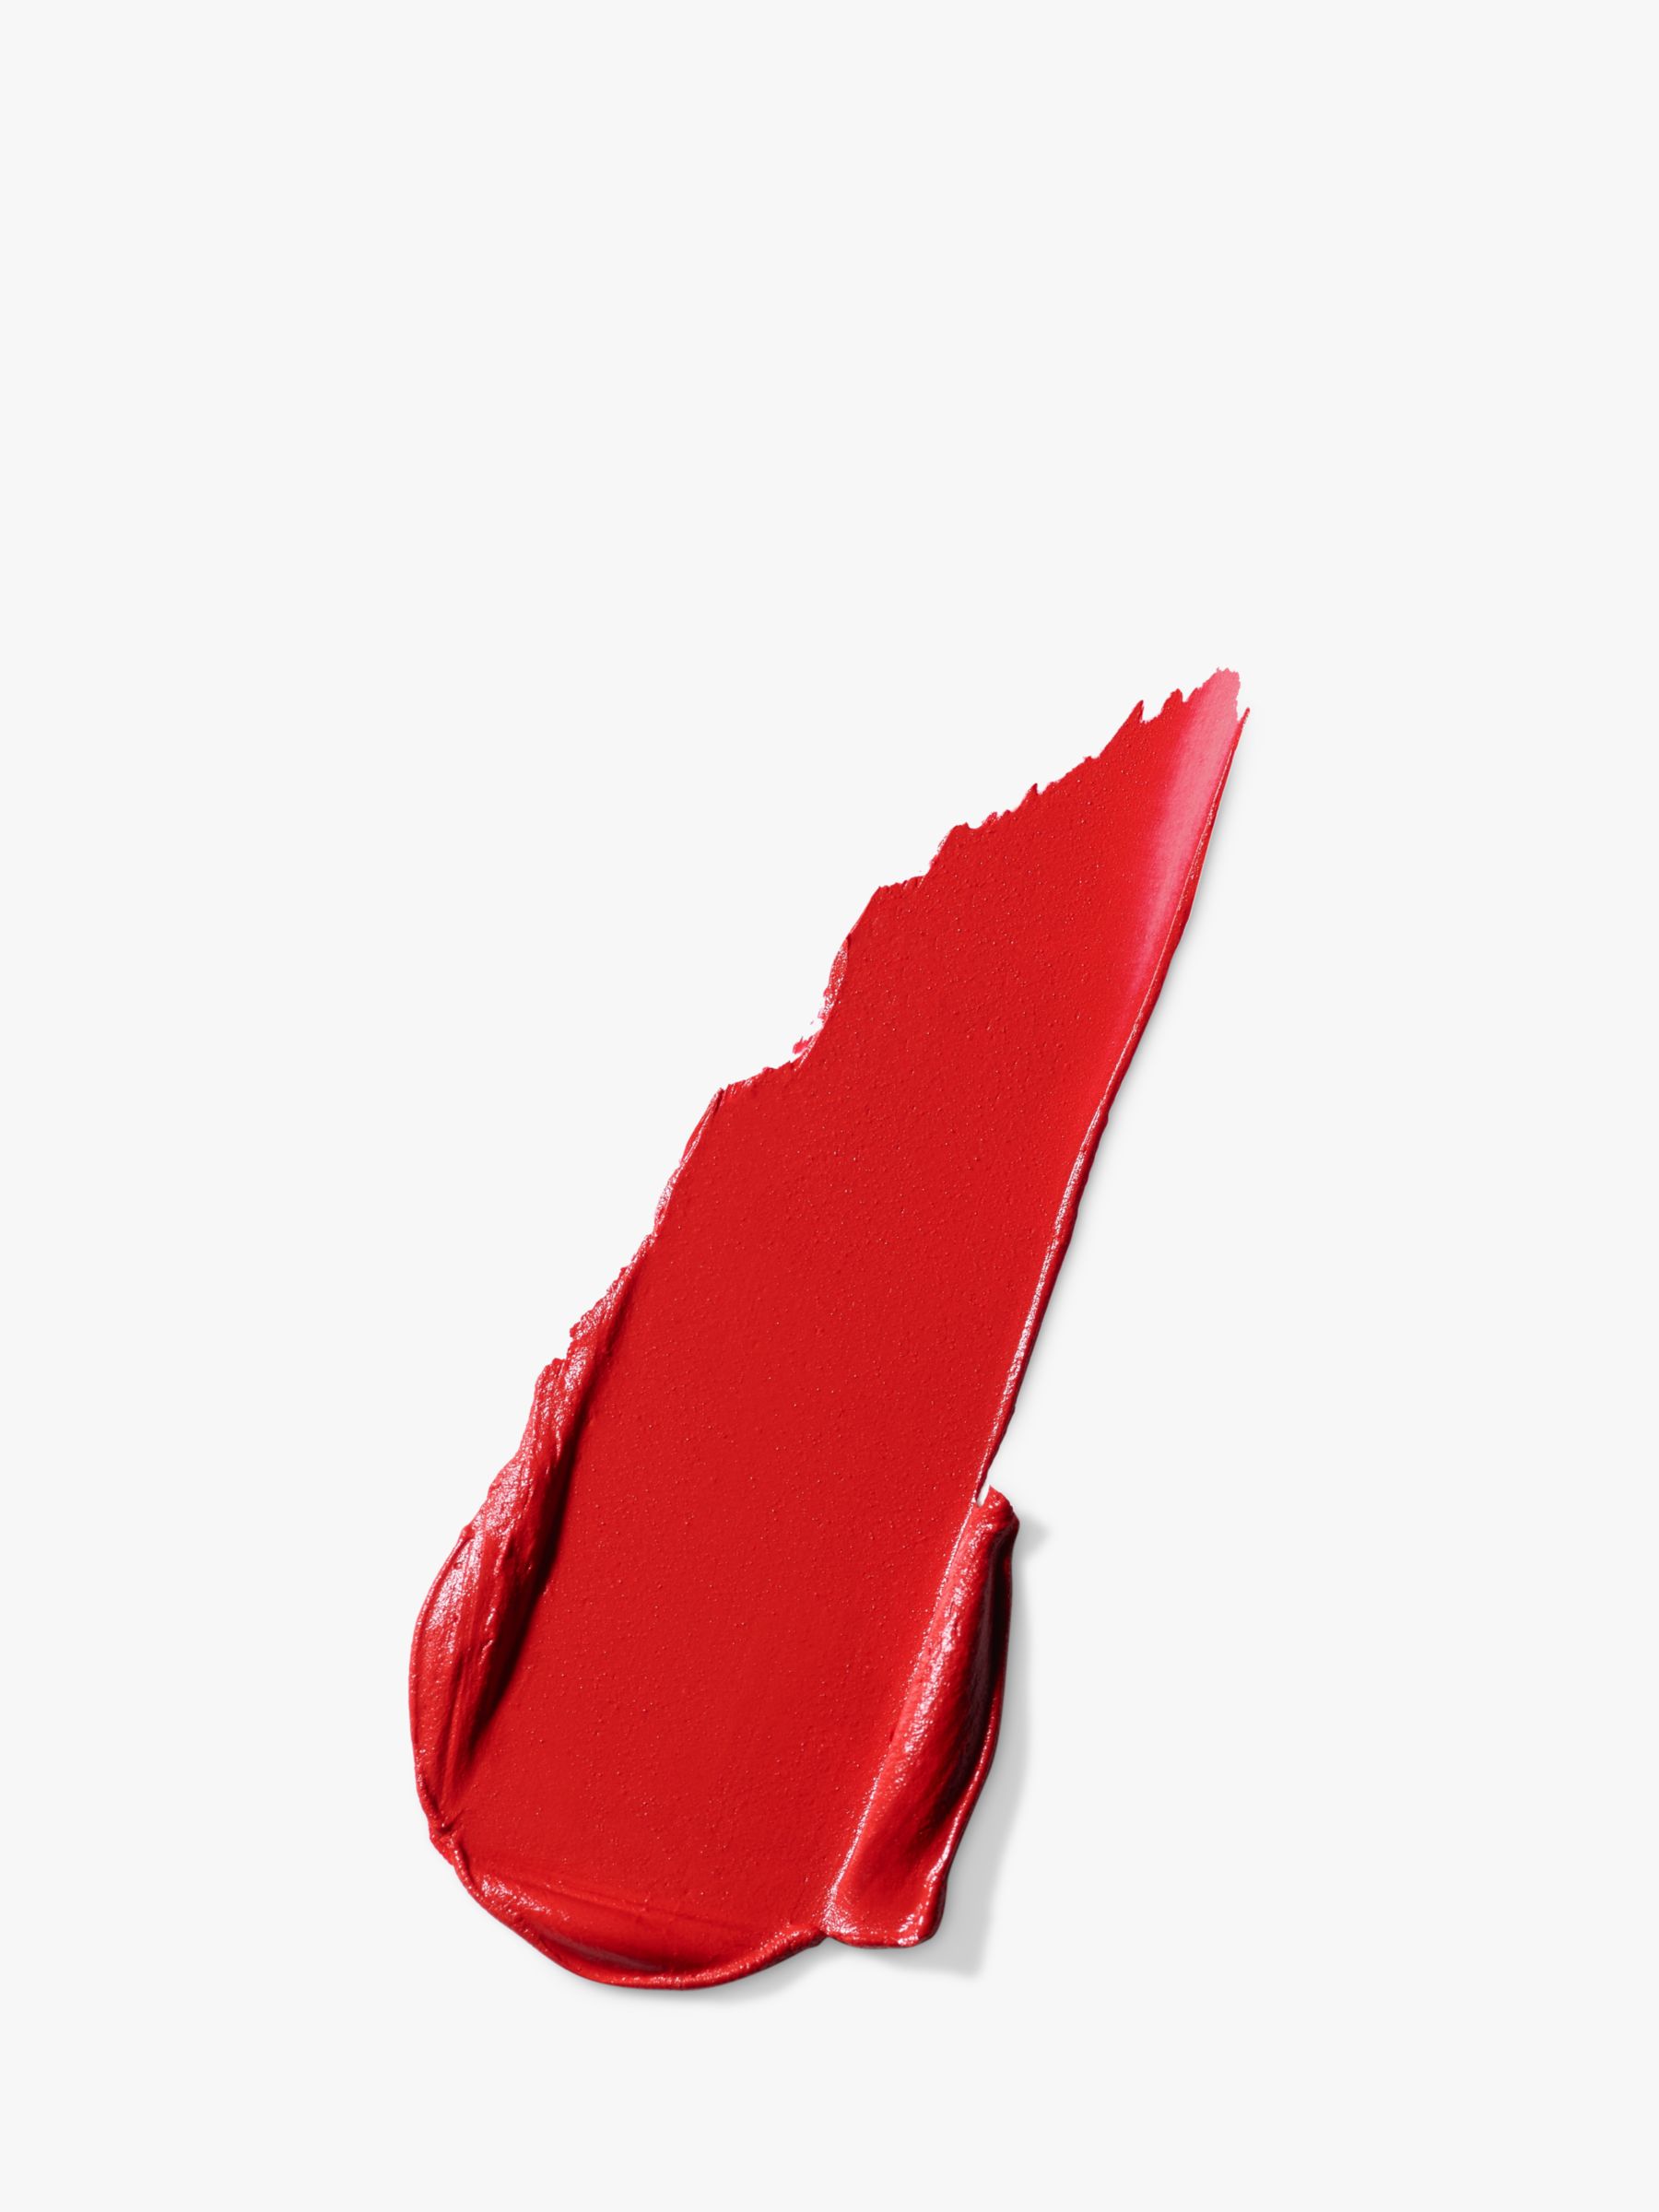 MAC Lipstick -  Powder Kiss Velvet Blur Slim Stick, Devoted To Danger 2